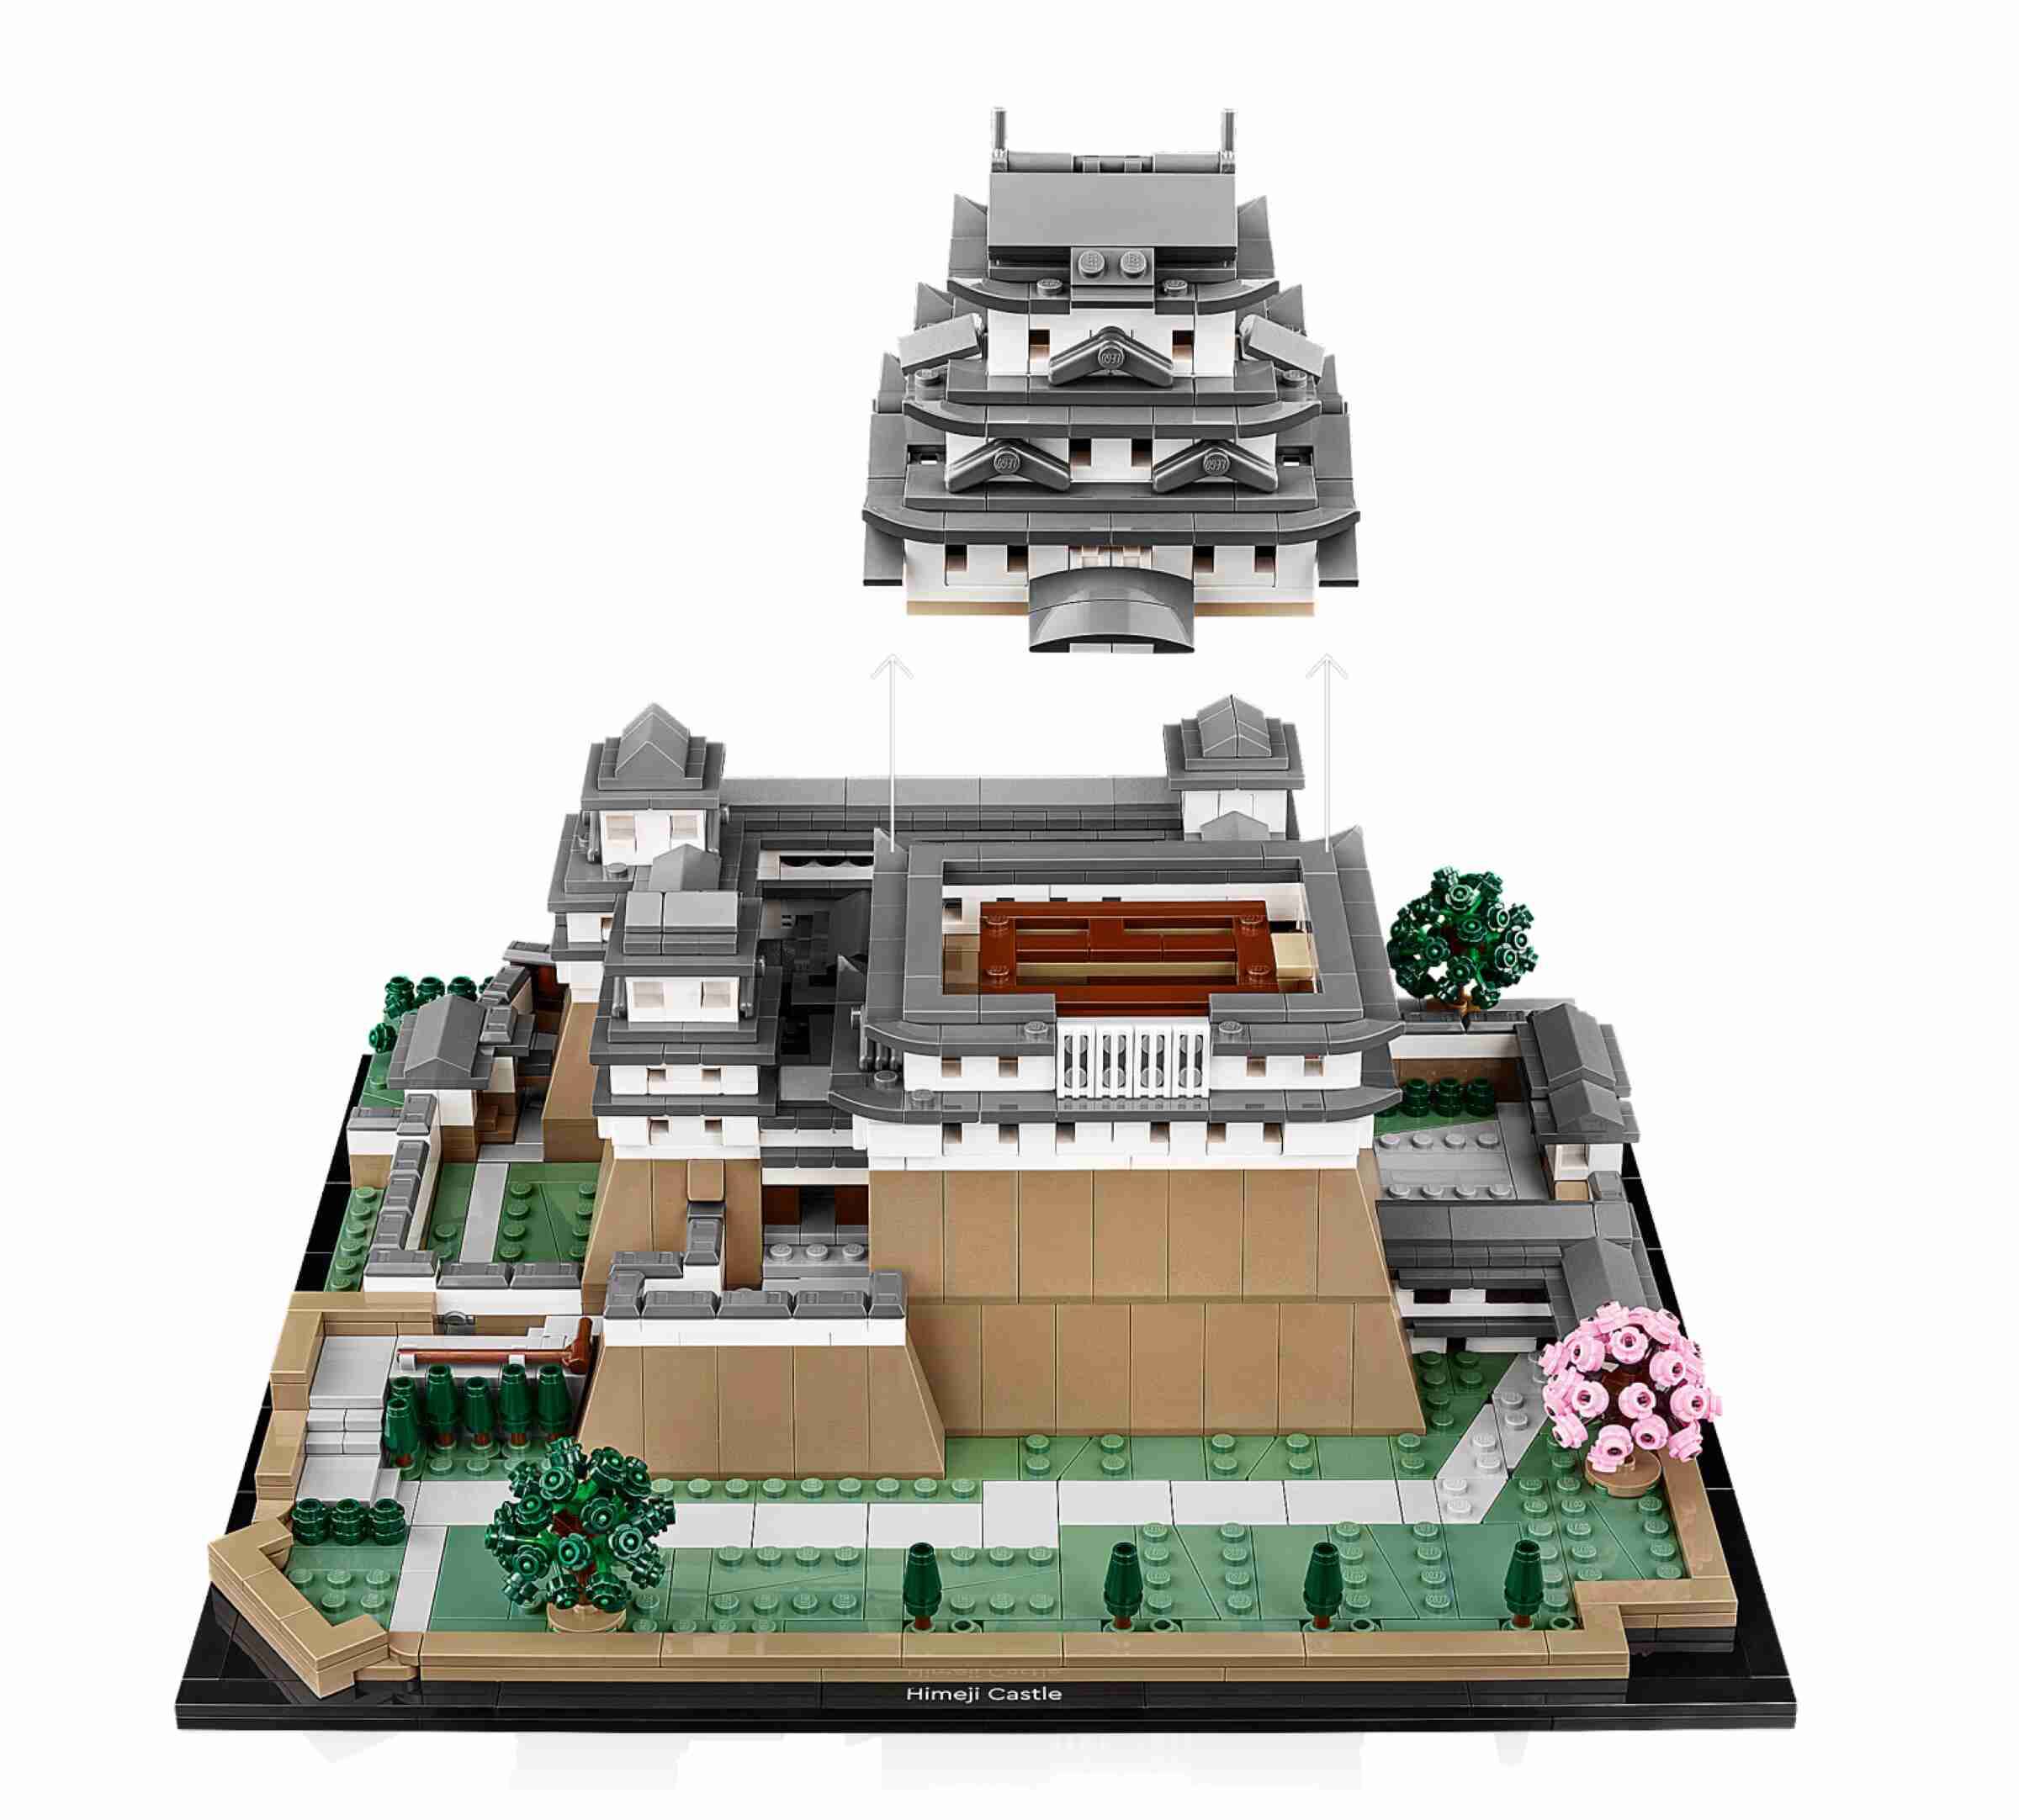 LEGO 21060 Architecture Burg Himeji, authentische Details